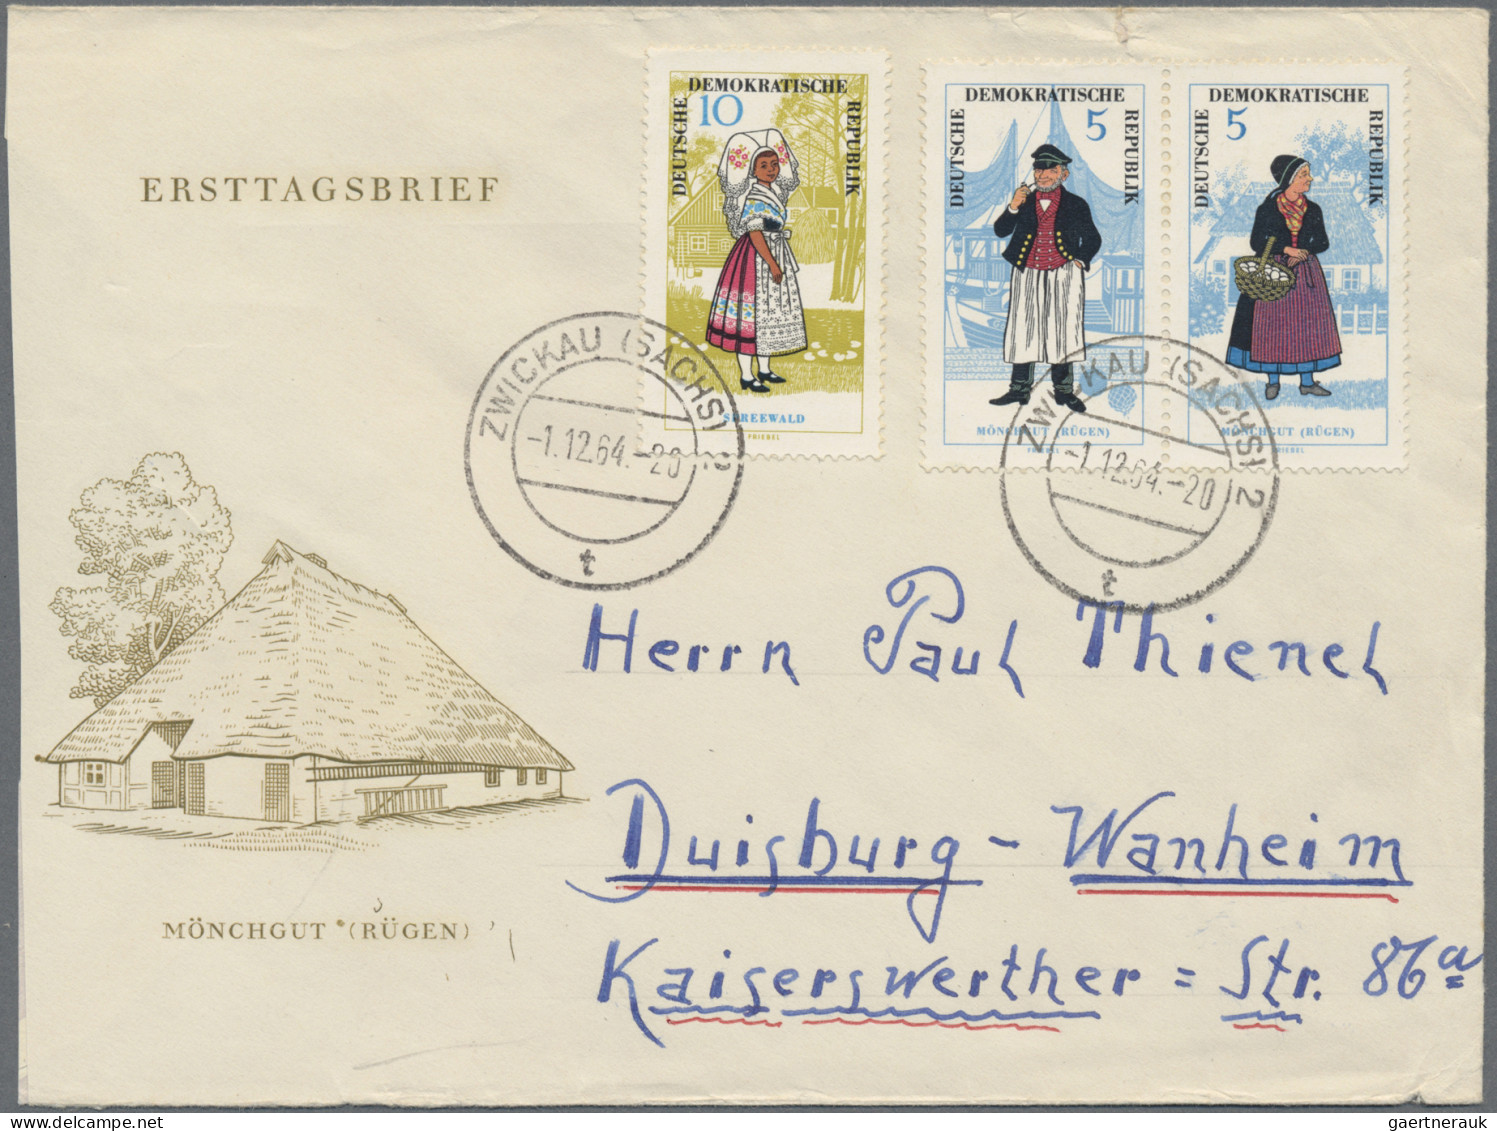 DDR: 1950/1966, Partie von 39 Briefen und Karten mit interessanten Frankaturen d